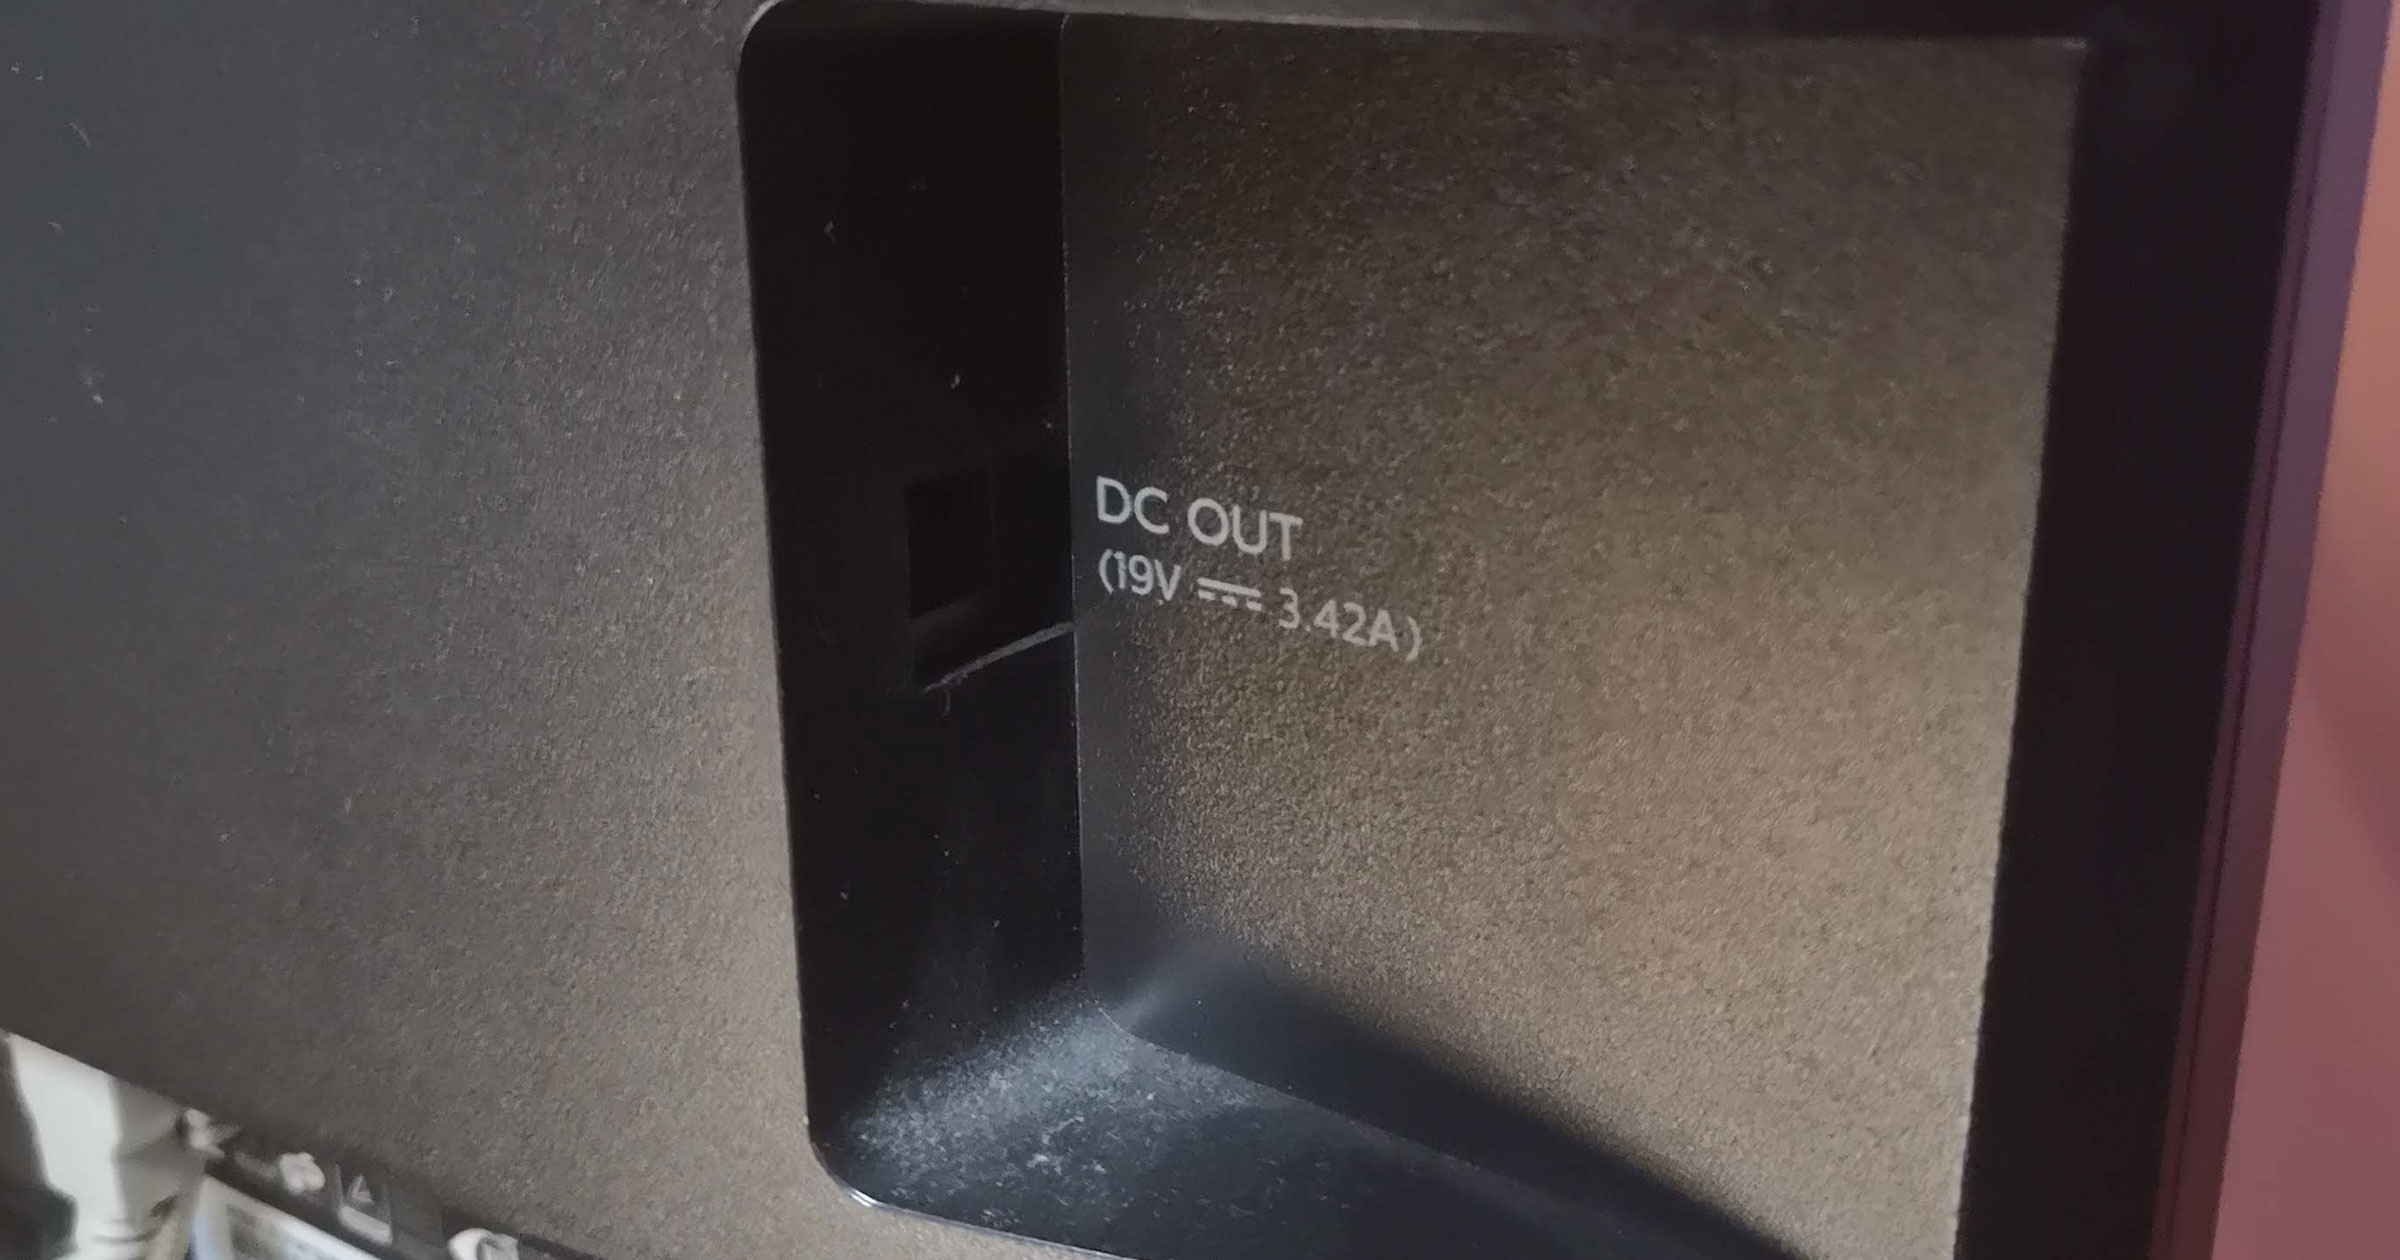 [PL] Recenzja monitora Philips 272B z złączem USB-C